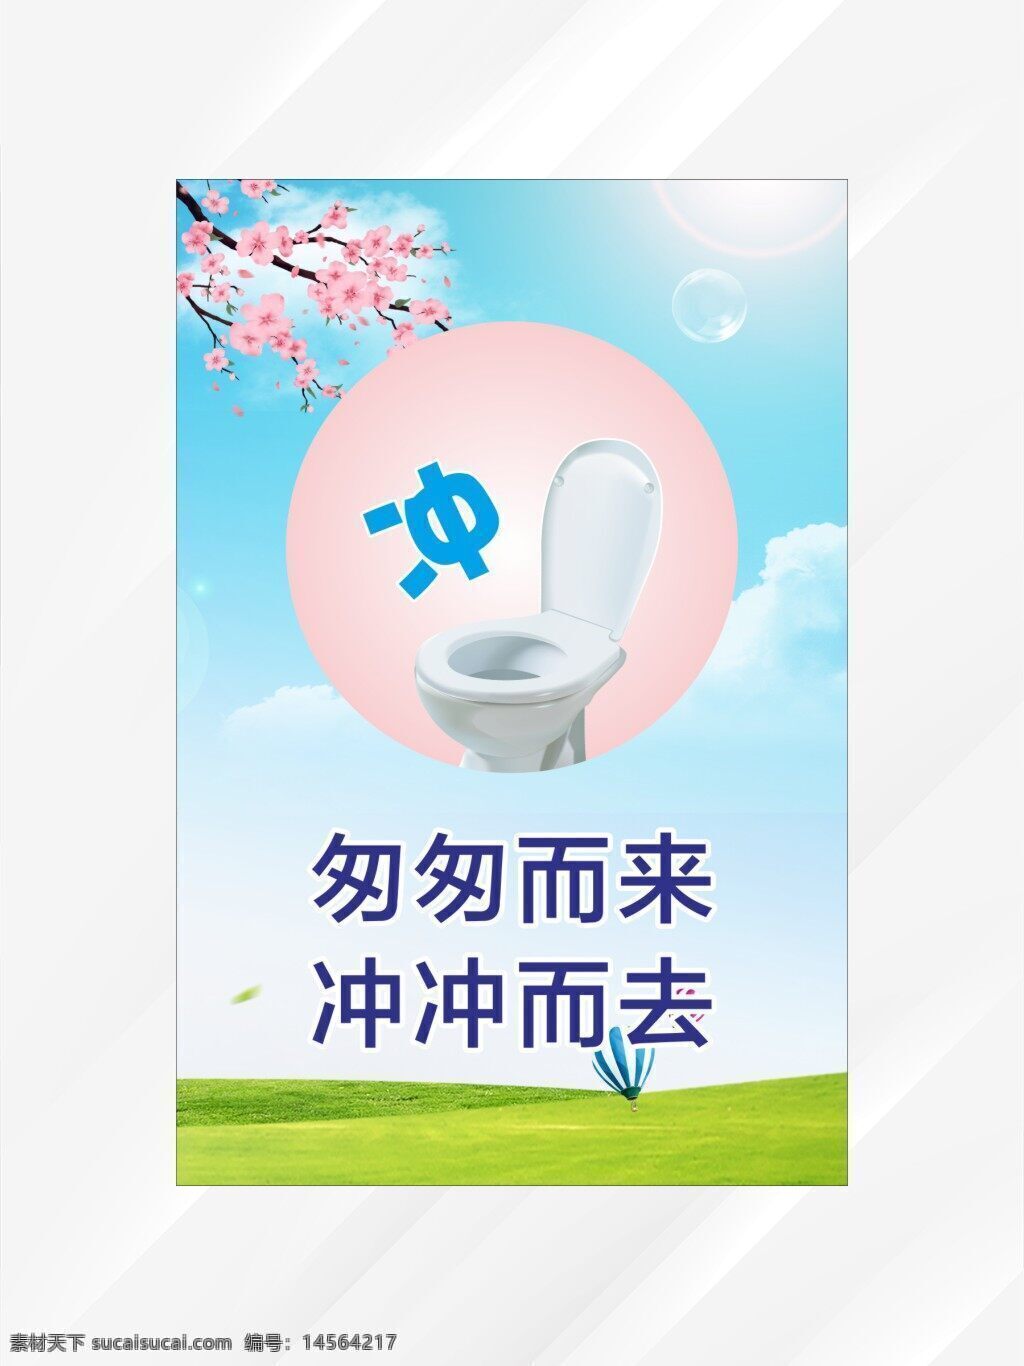 世界厕所日文明如厕公共卫知识科普实景生手机海报_图片模板素材-稿定设计